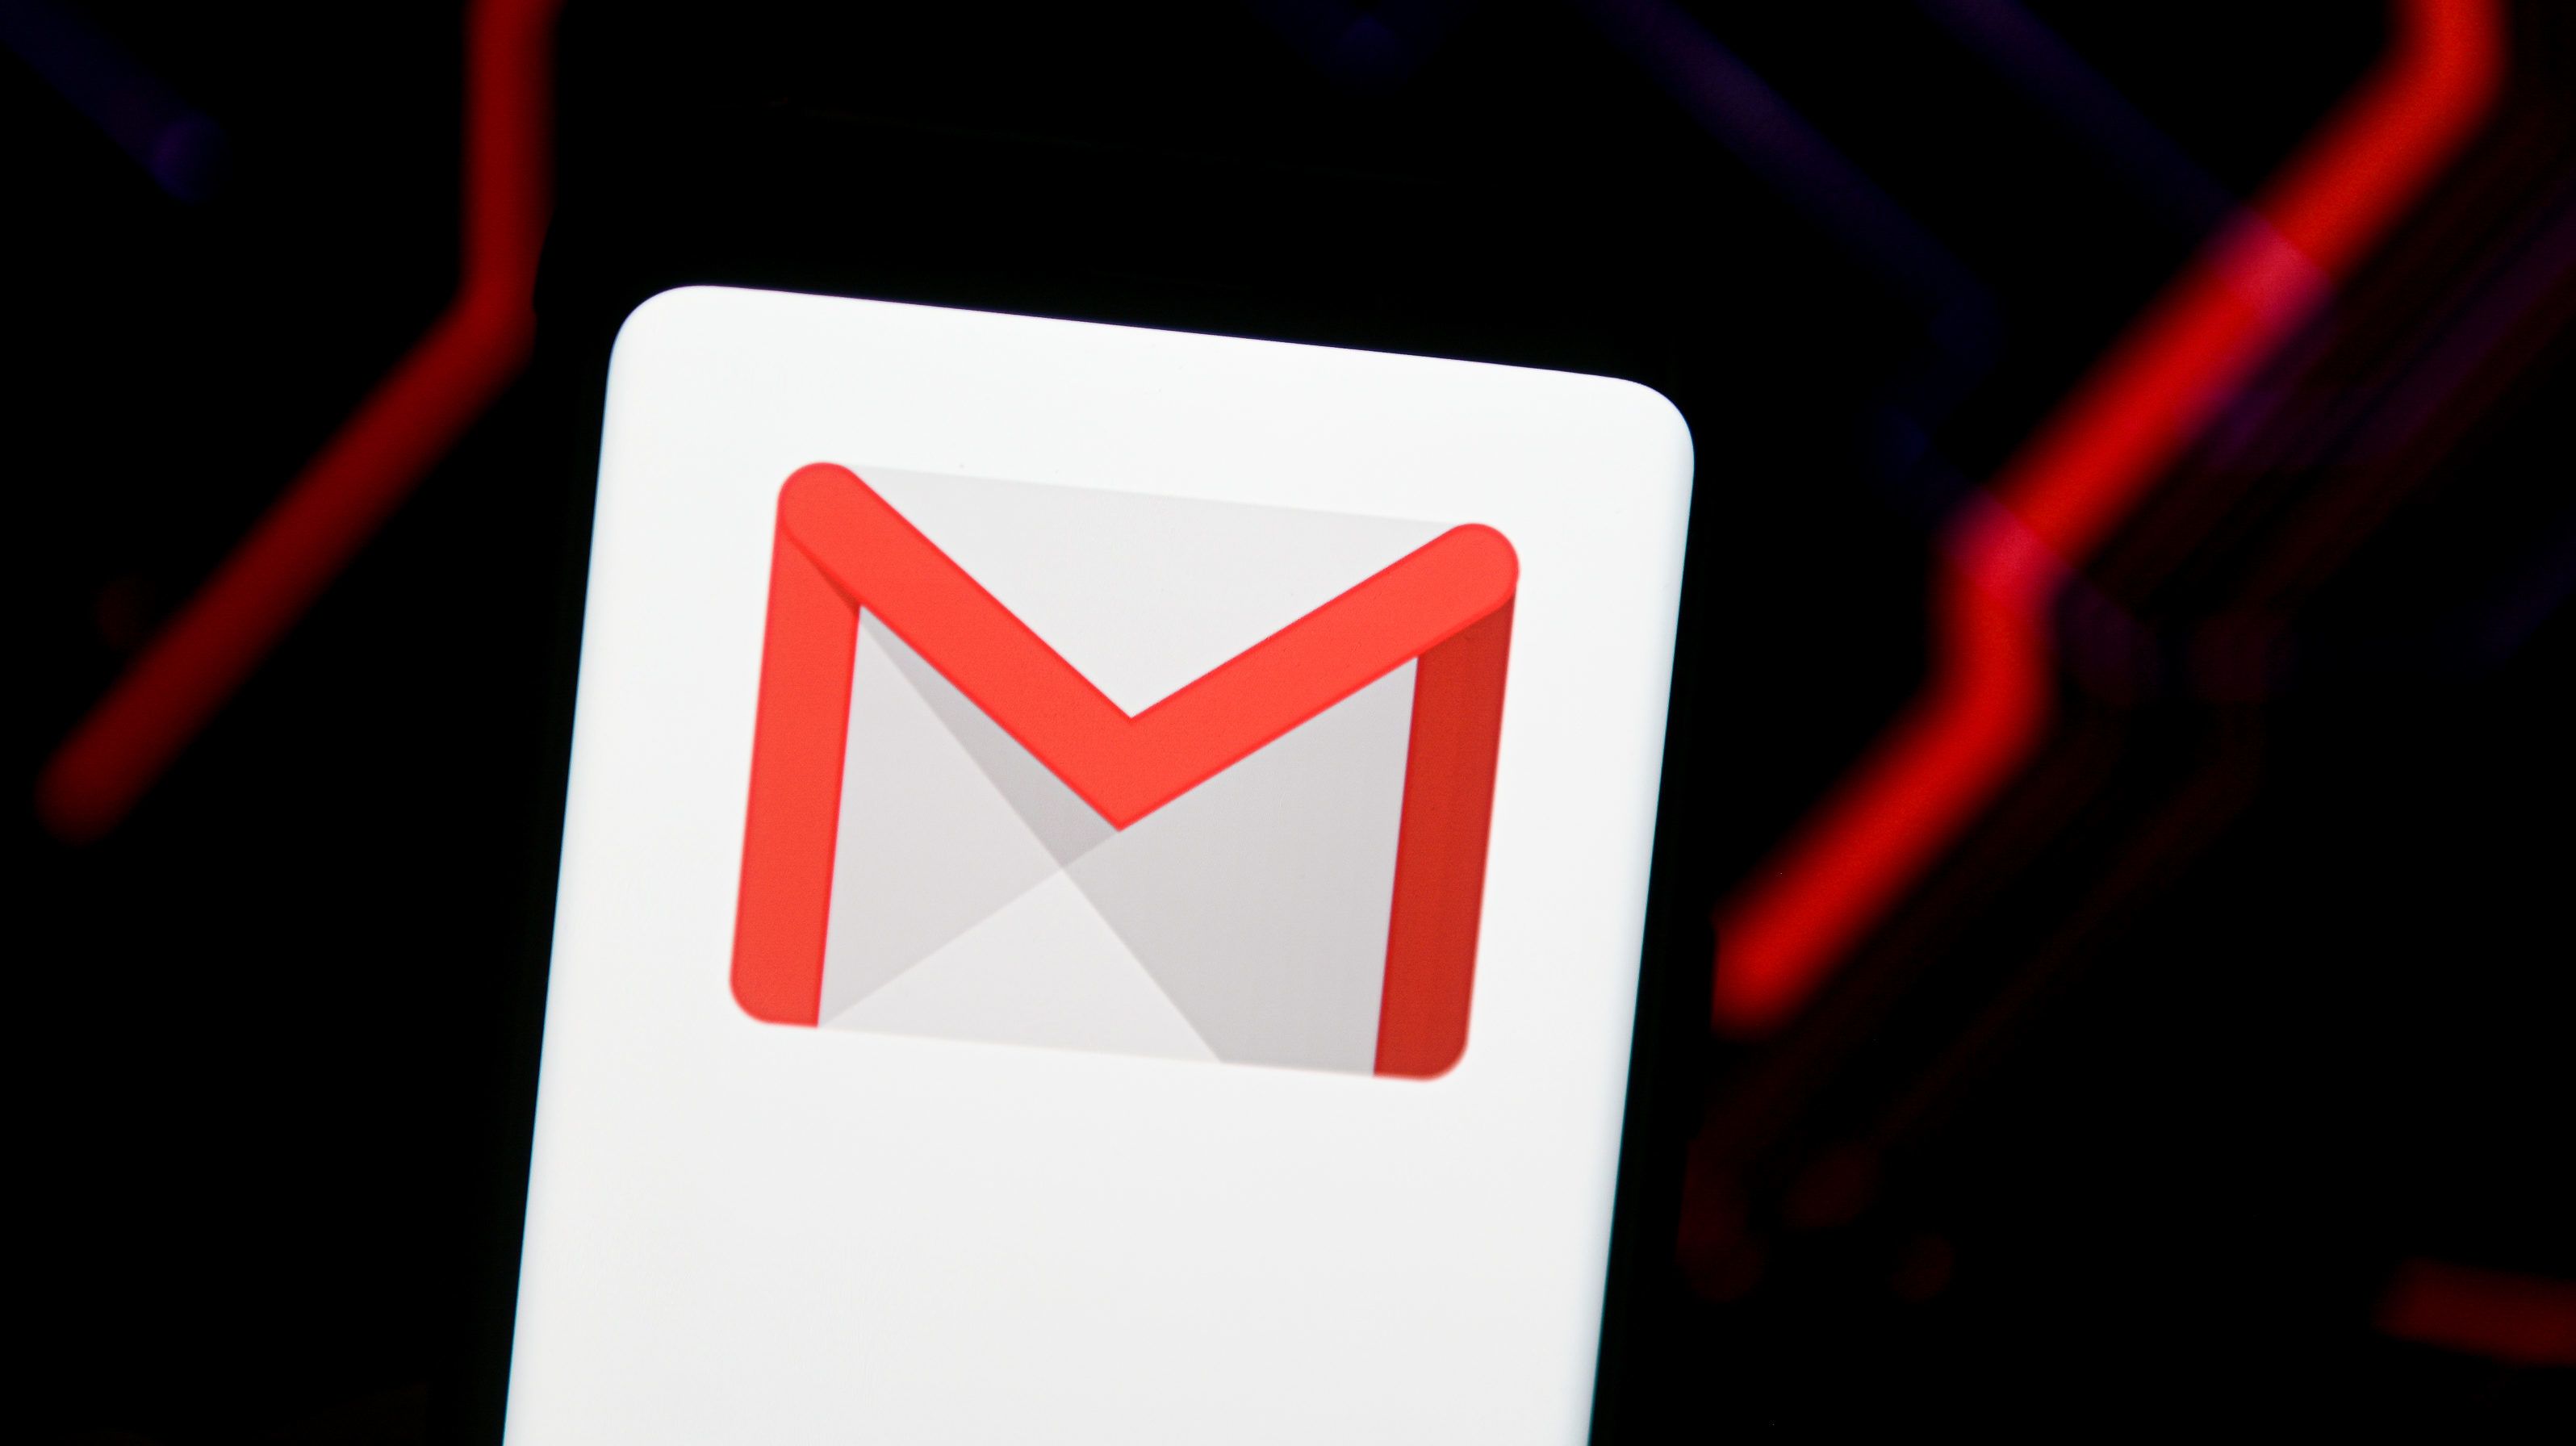 Perceket spórolhatunk a Gmail újításával